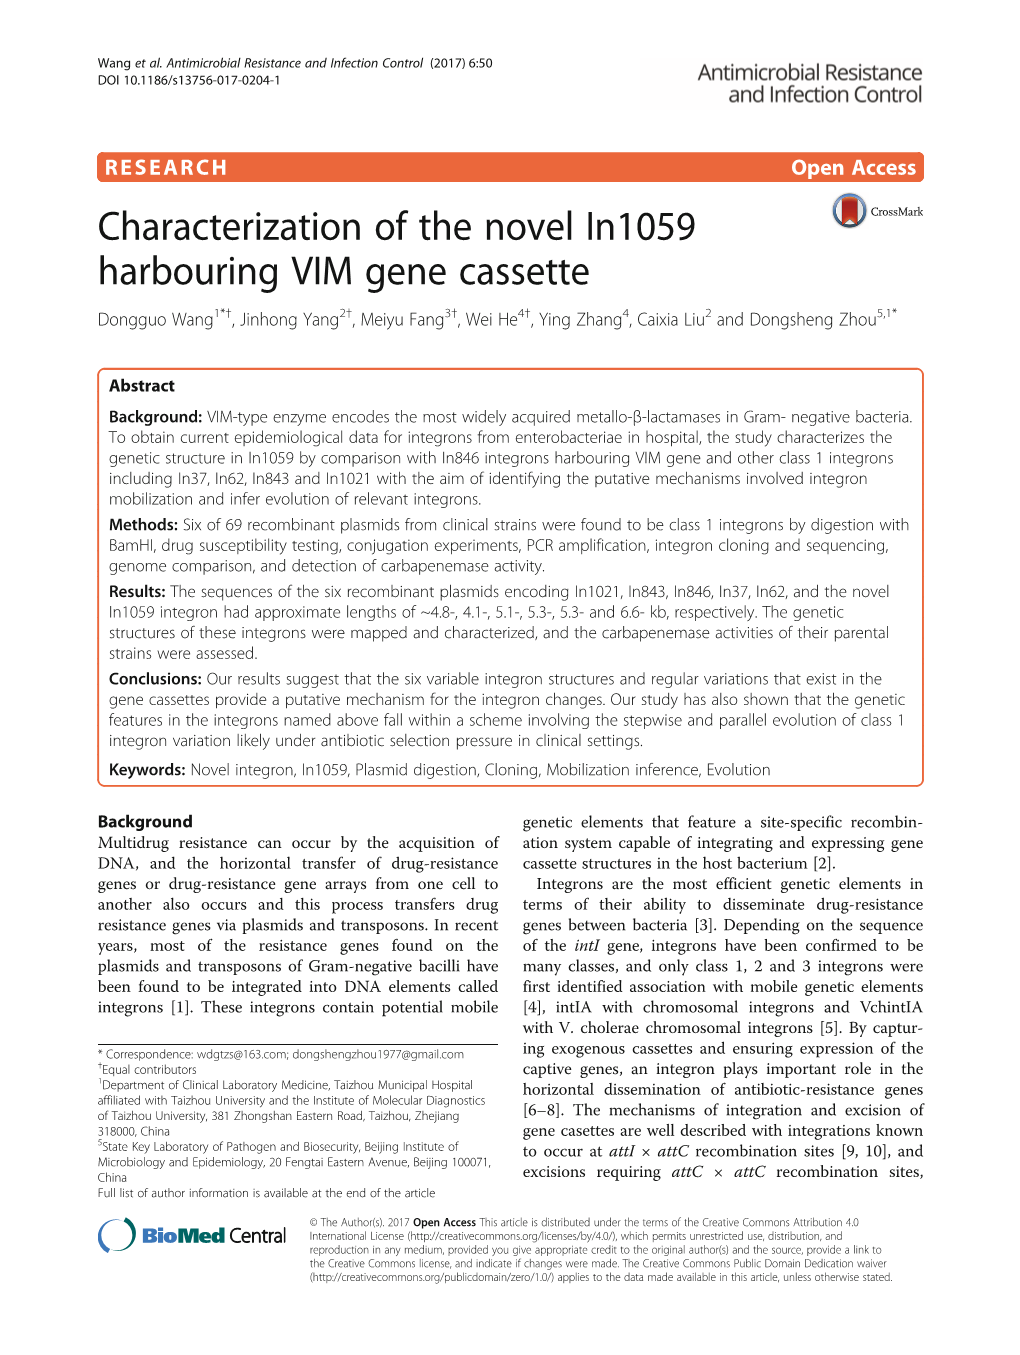 Characterization of the Novel In1059 Harbouring VIM Gene Cassette